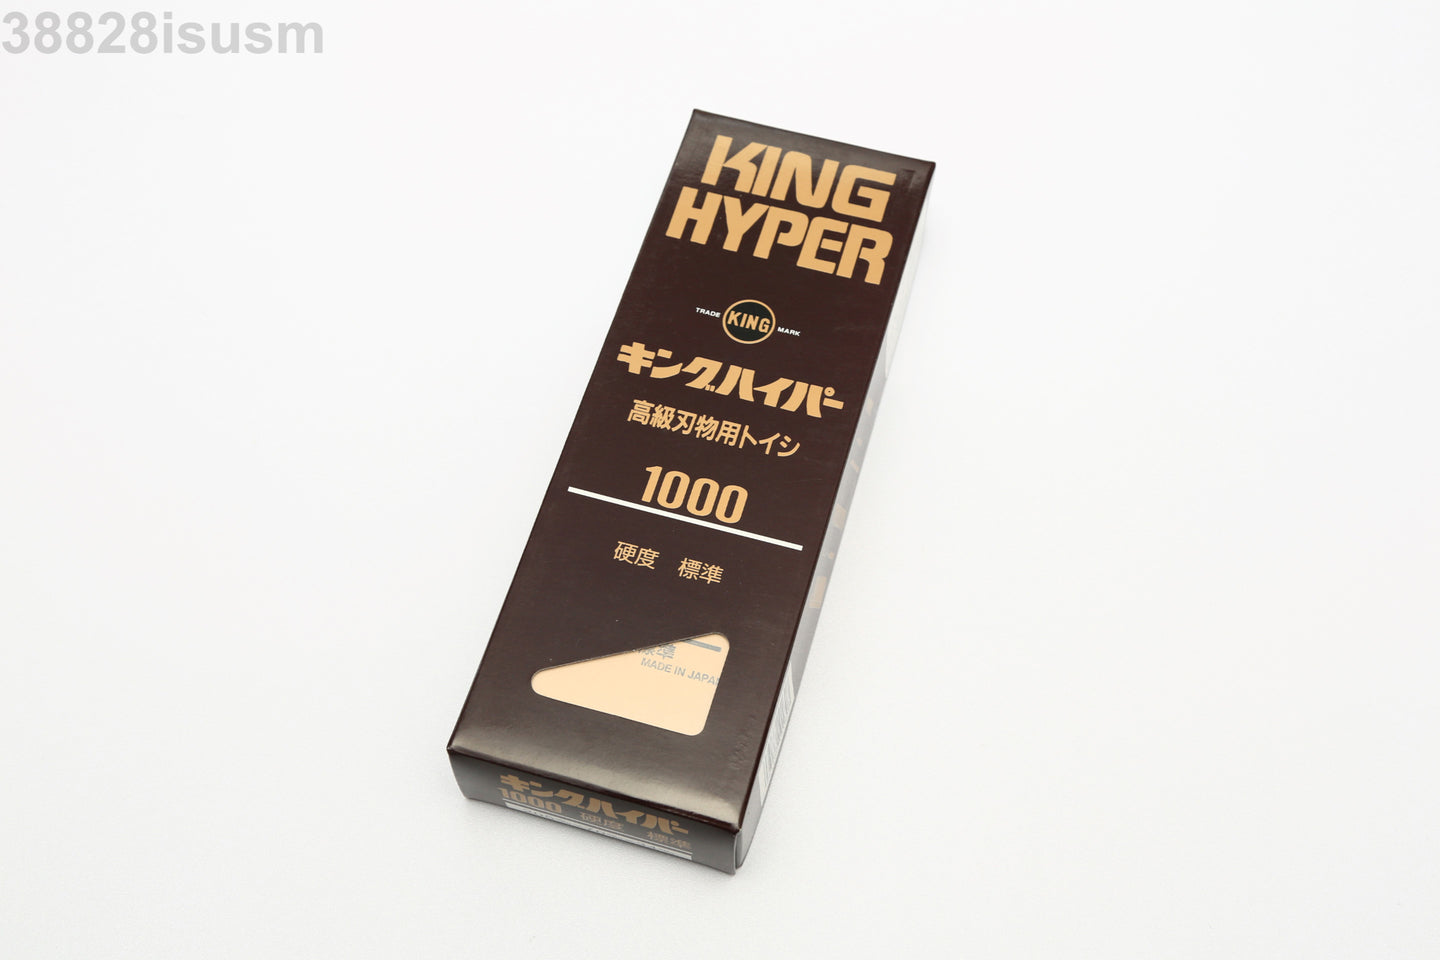 KING Hyper 1000